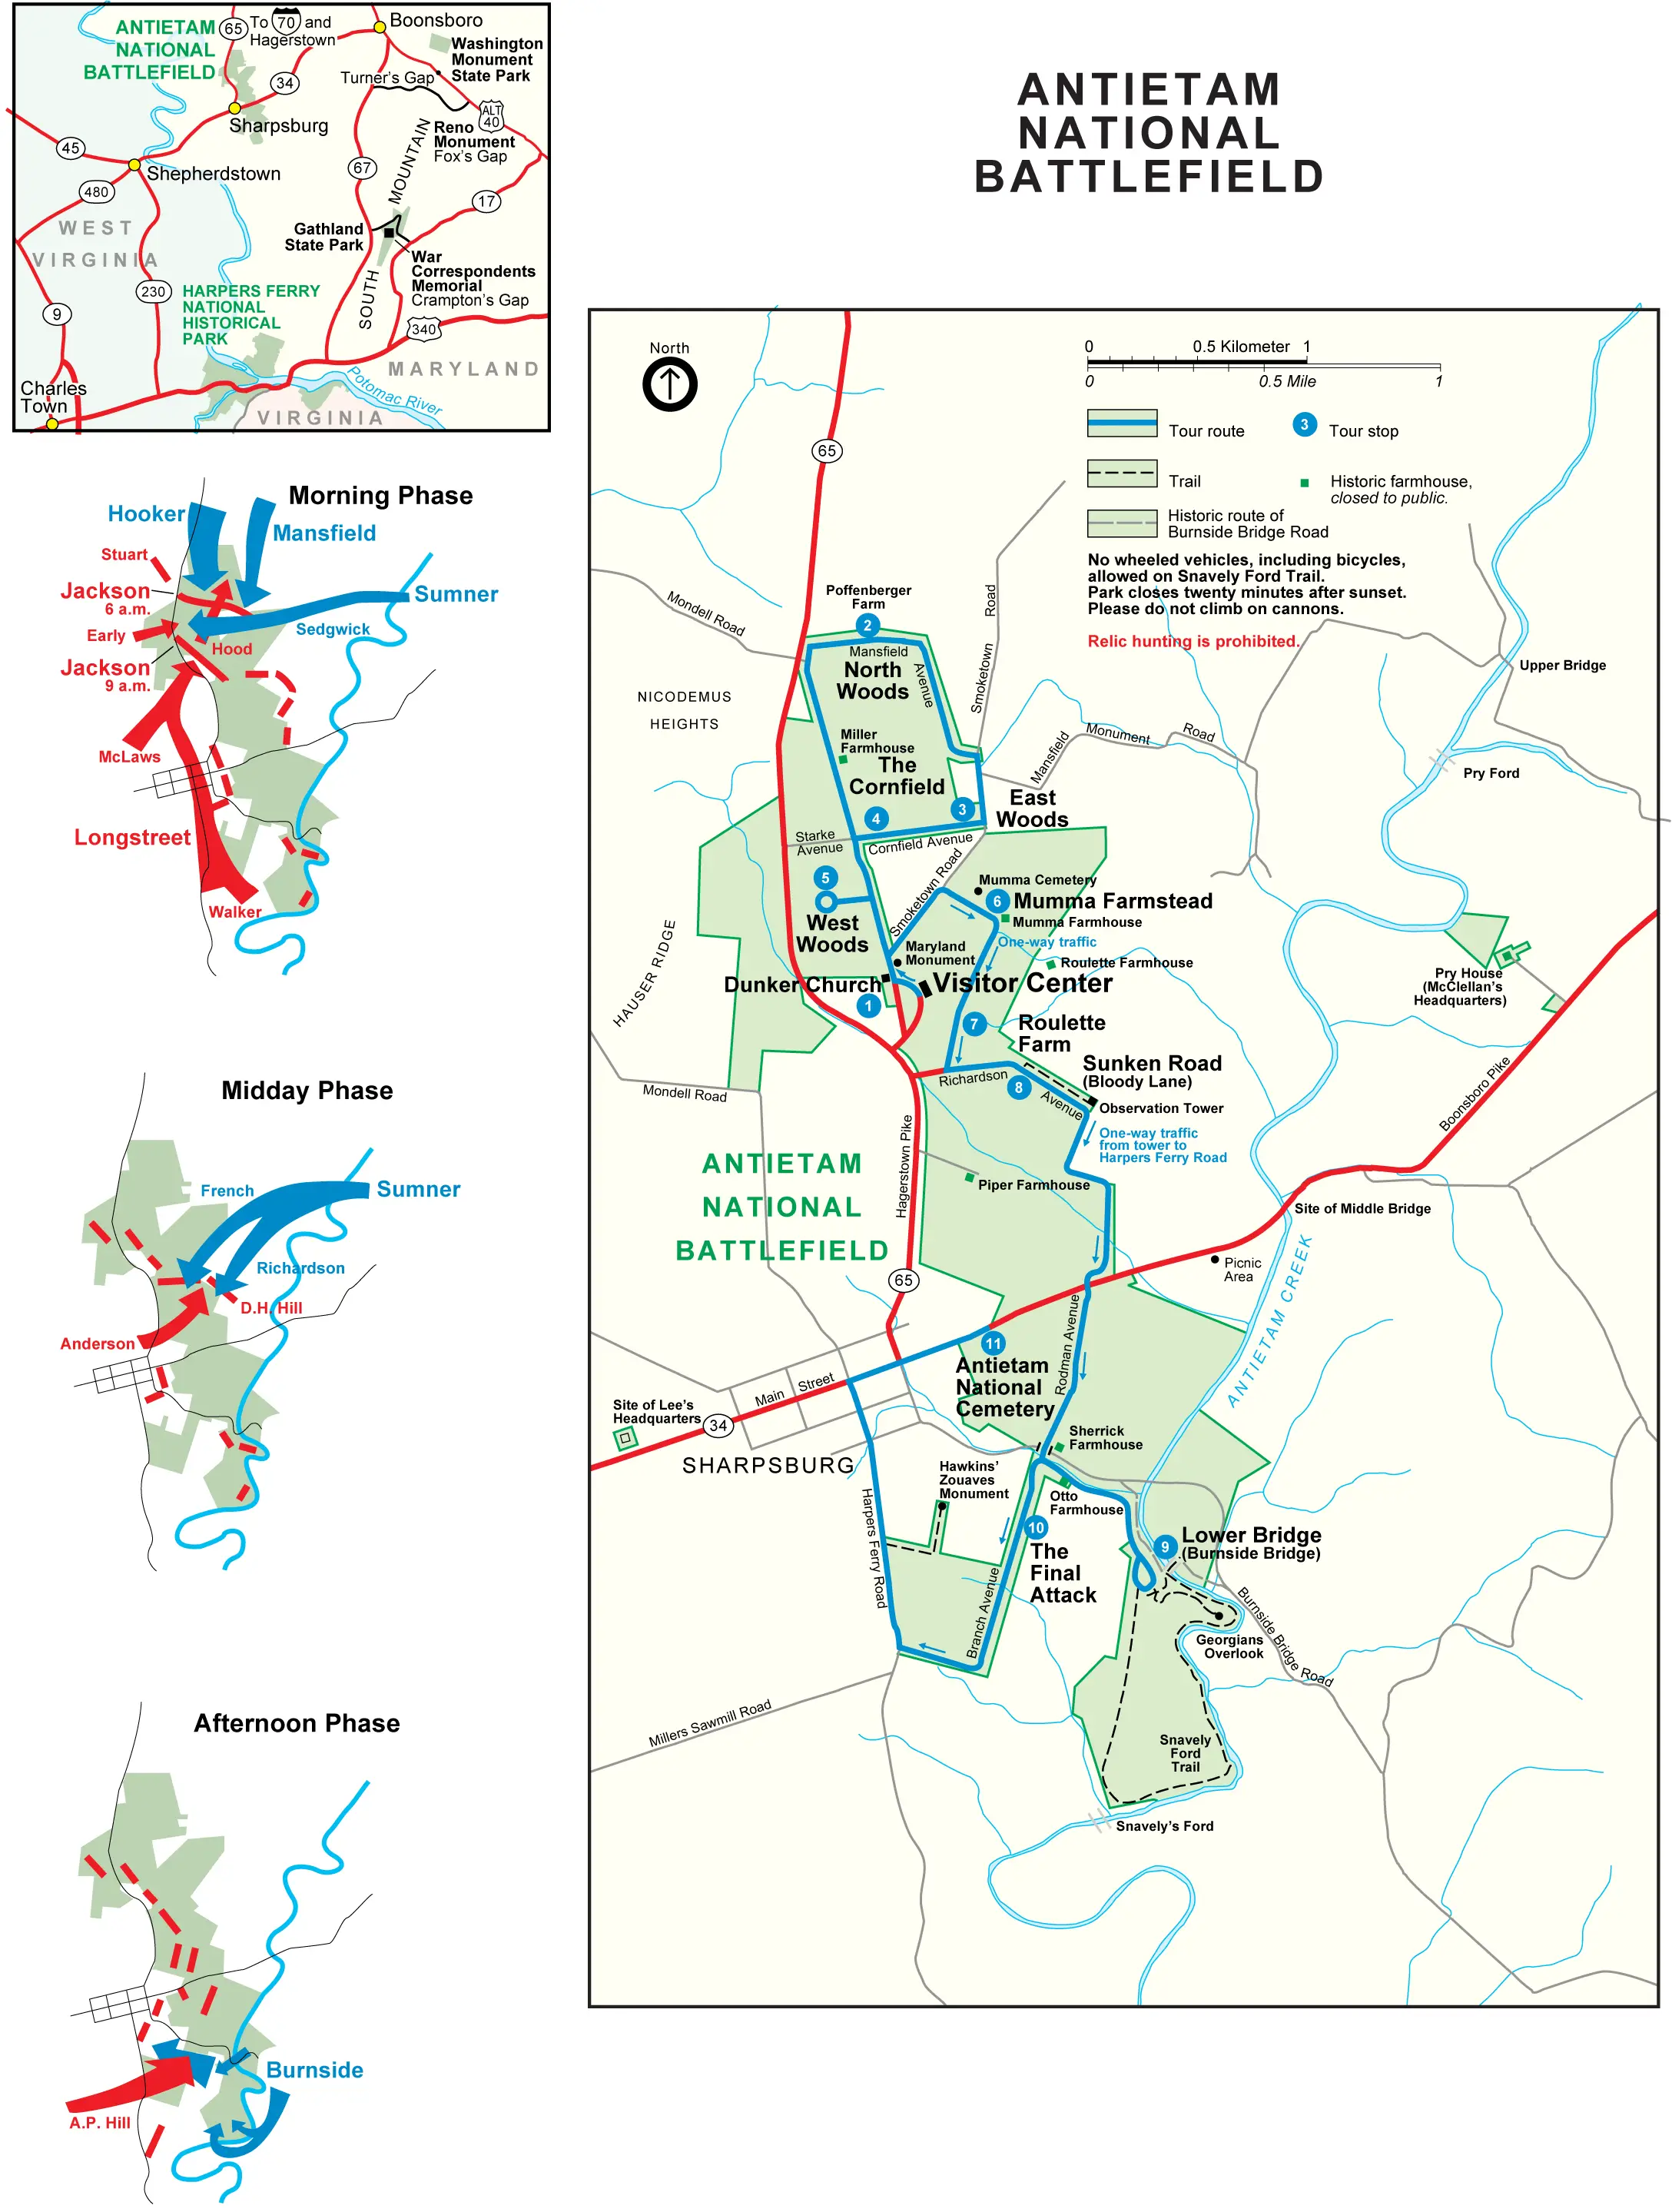 Battlefield of Antietam (sharpsburg) Map